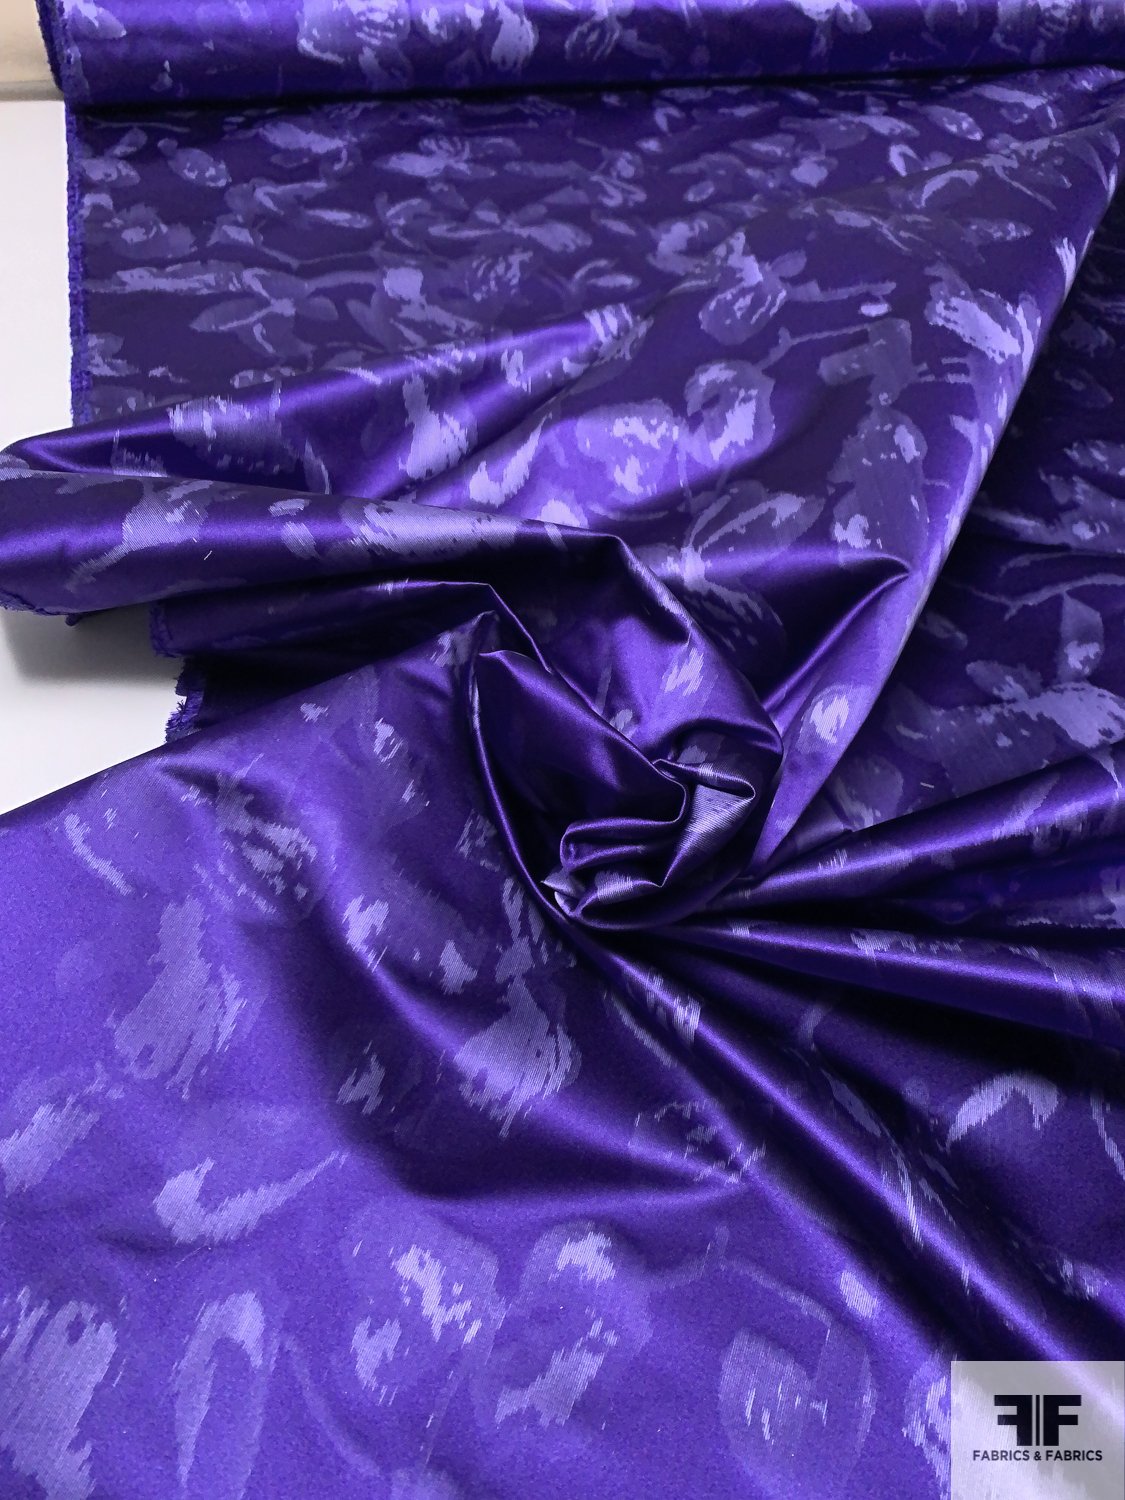 Oscar de la Renta Hazy Floral Printed Silk Satin - Purple / Dusty Light Purple